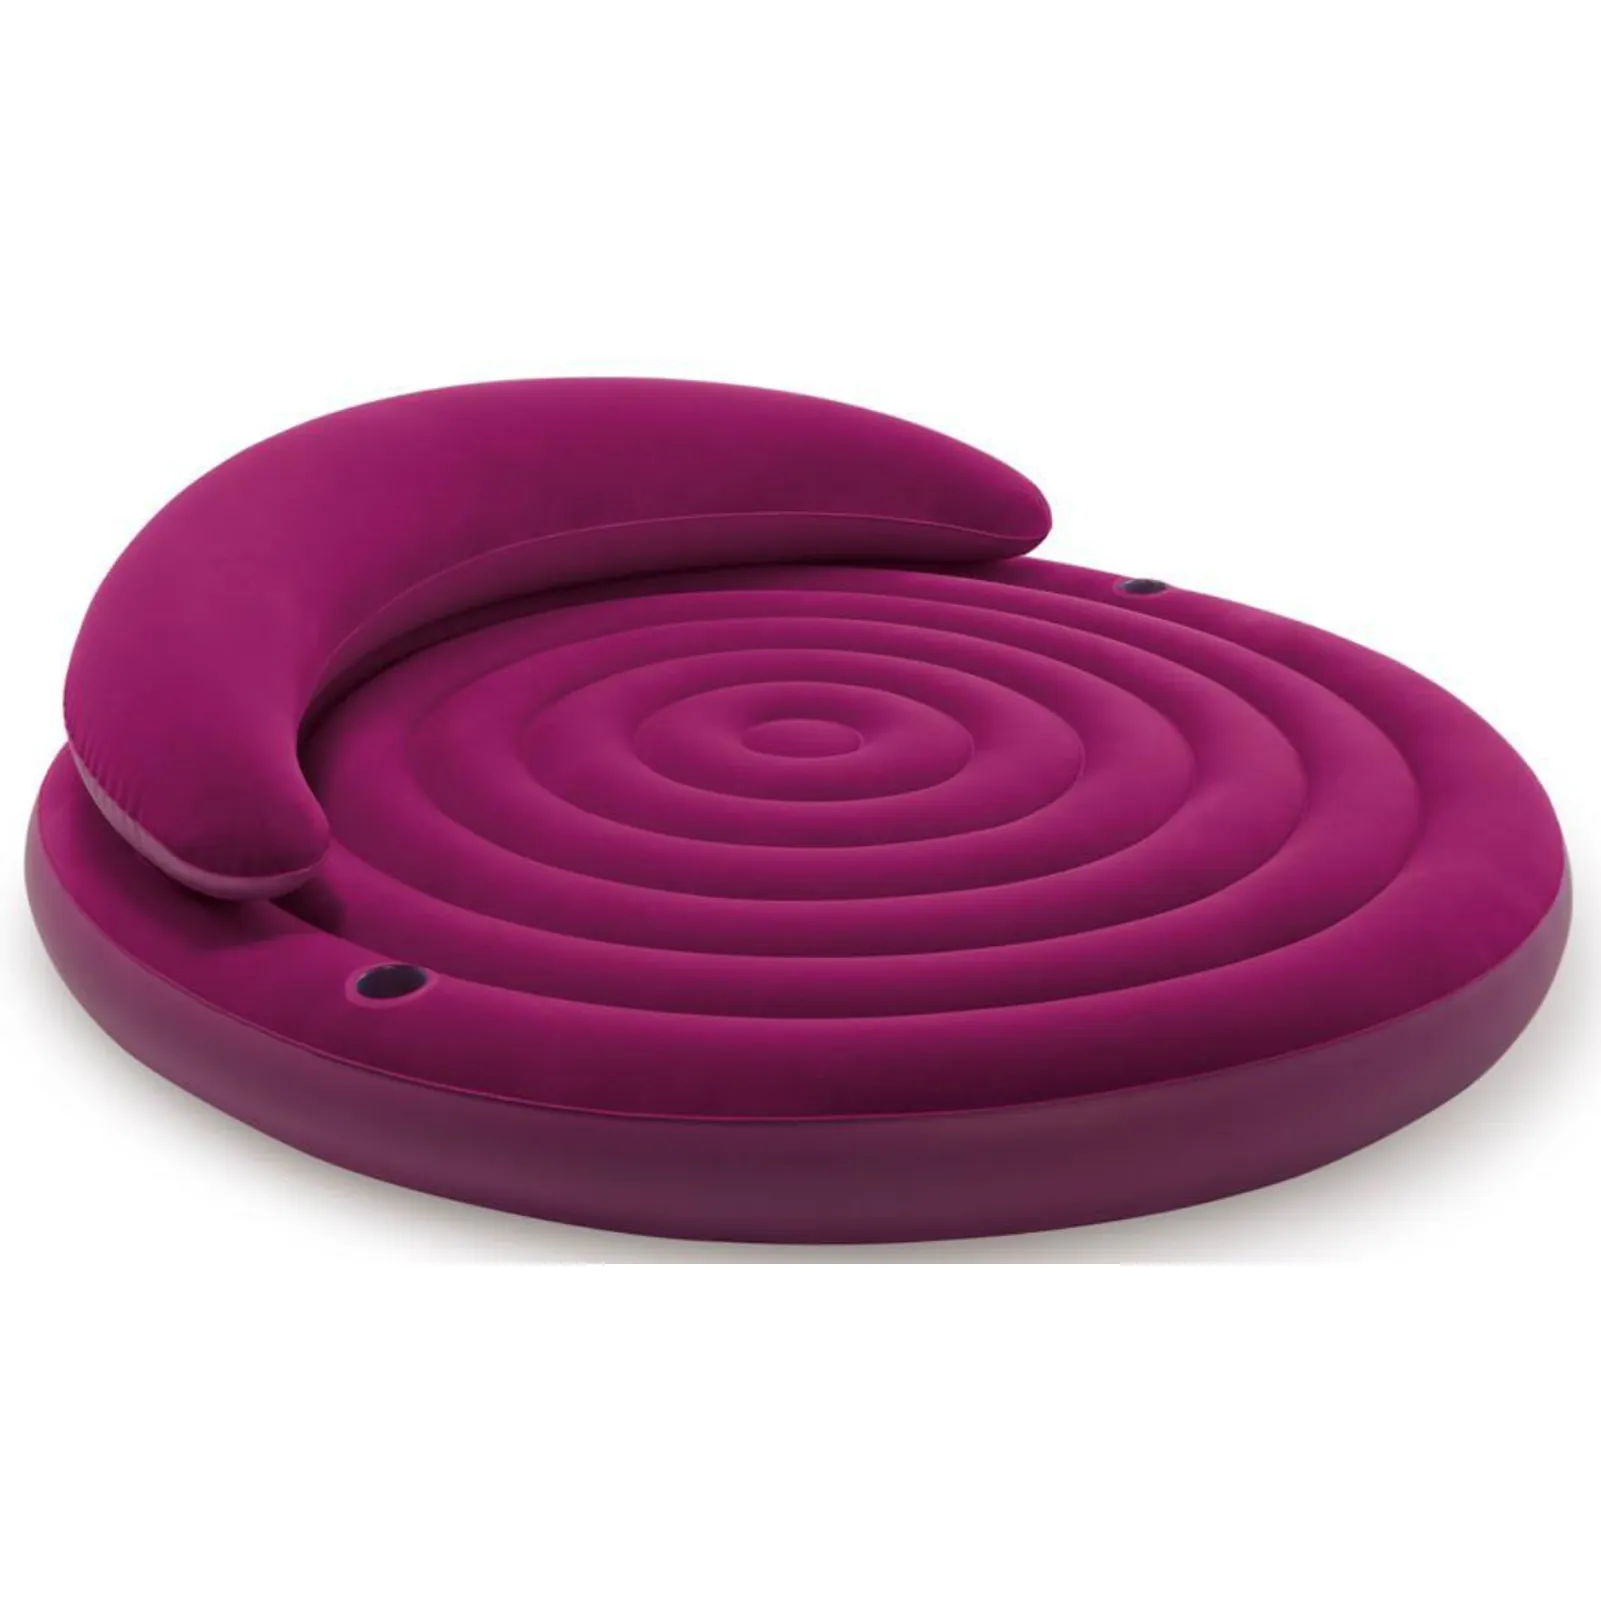 ПВХ надувной продукт удобный диван/надувной фиолетовый воздушный матрас/надувной матрас